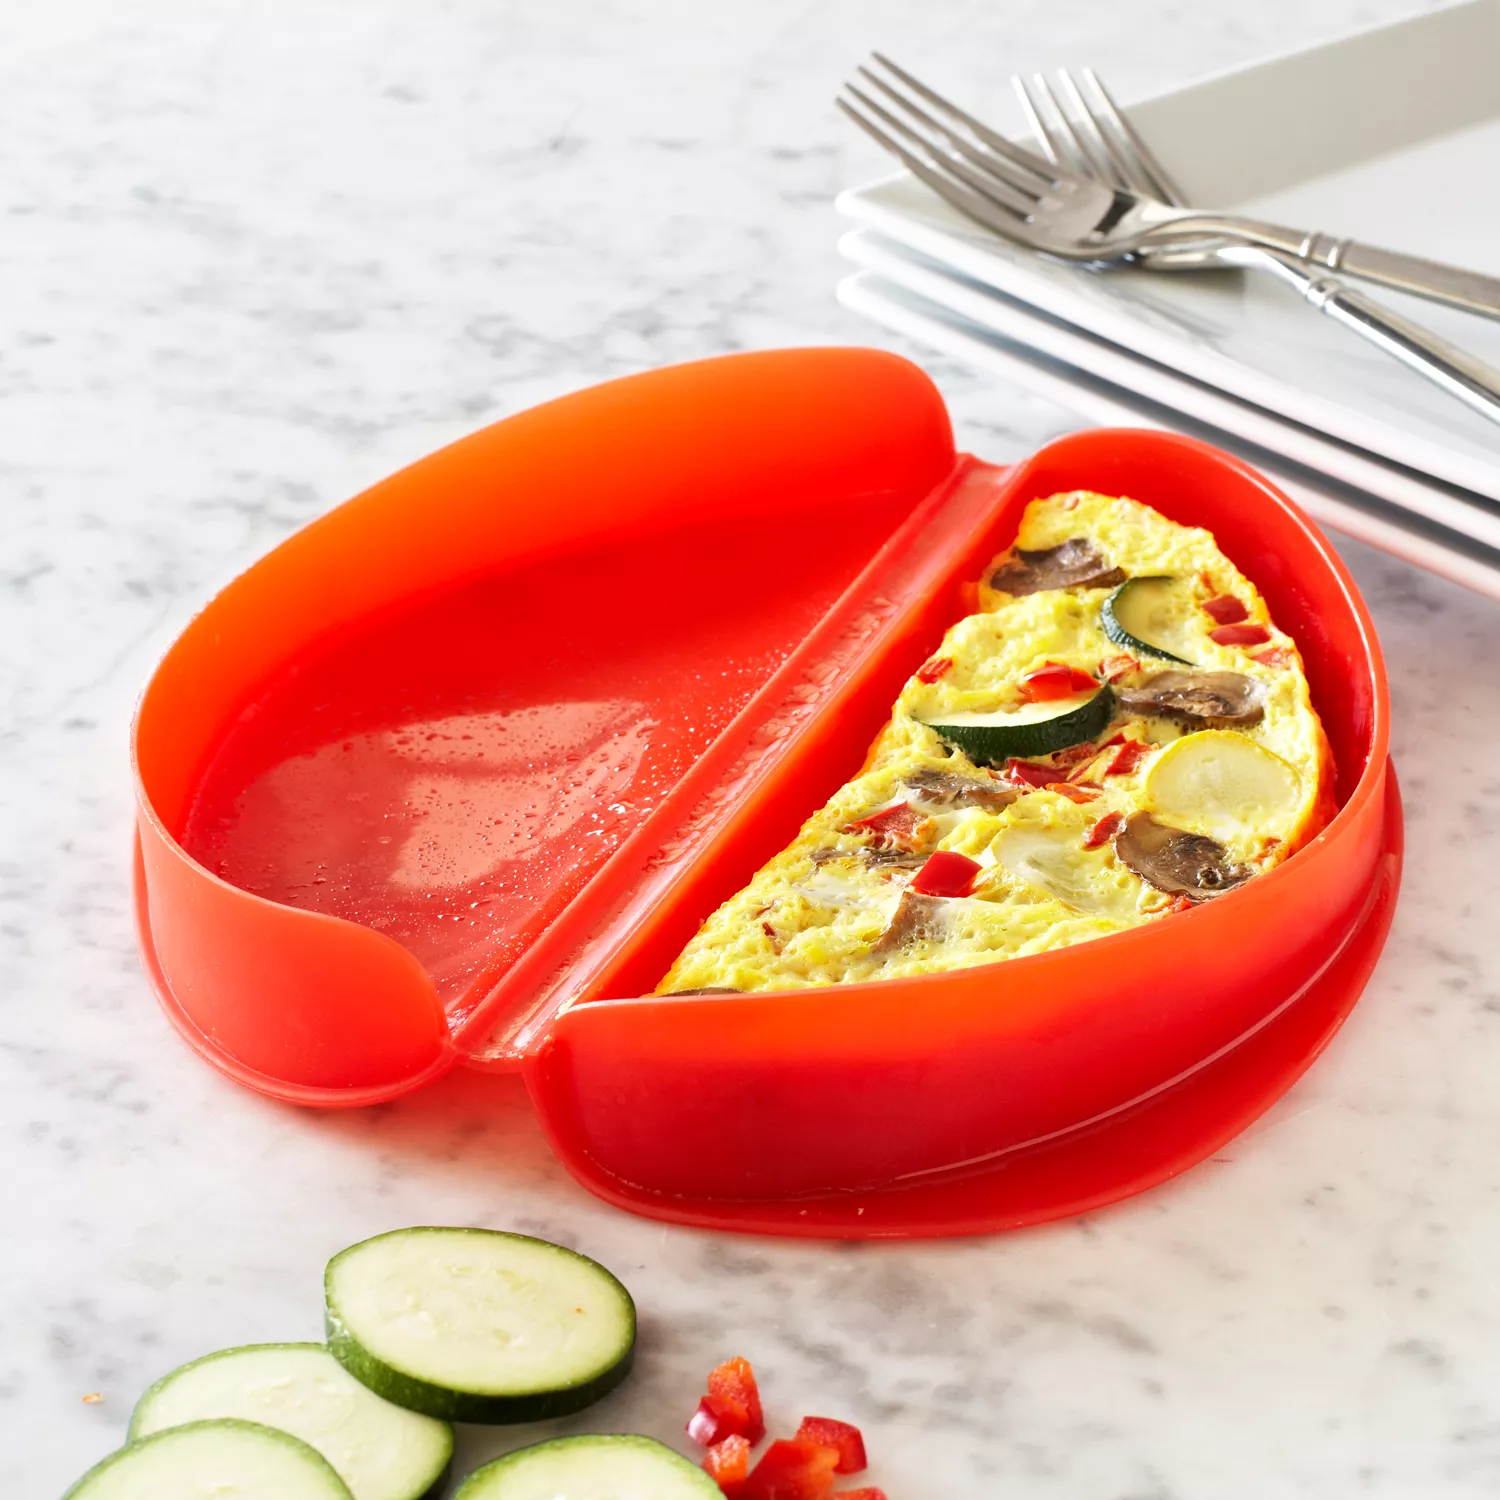 Microwave Omelet Maker - Egg Omelette Maker Tray, Egg Cooker